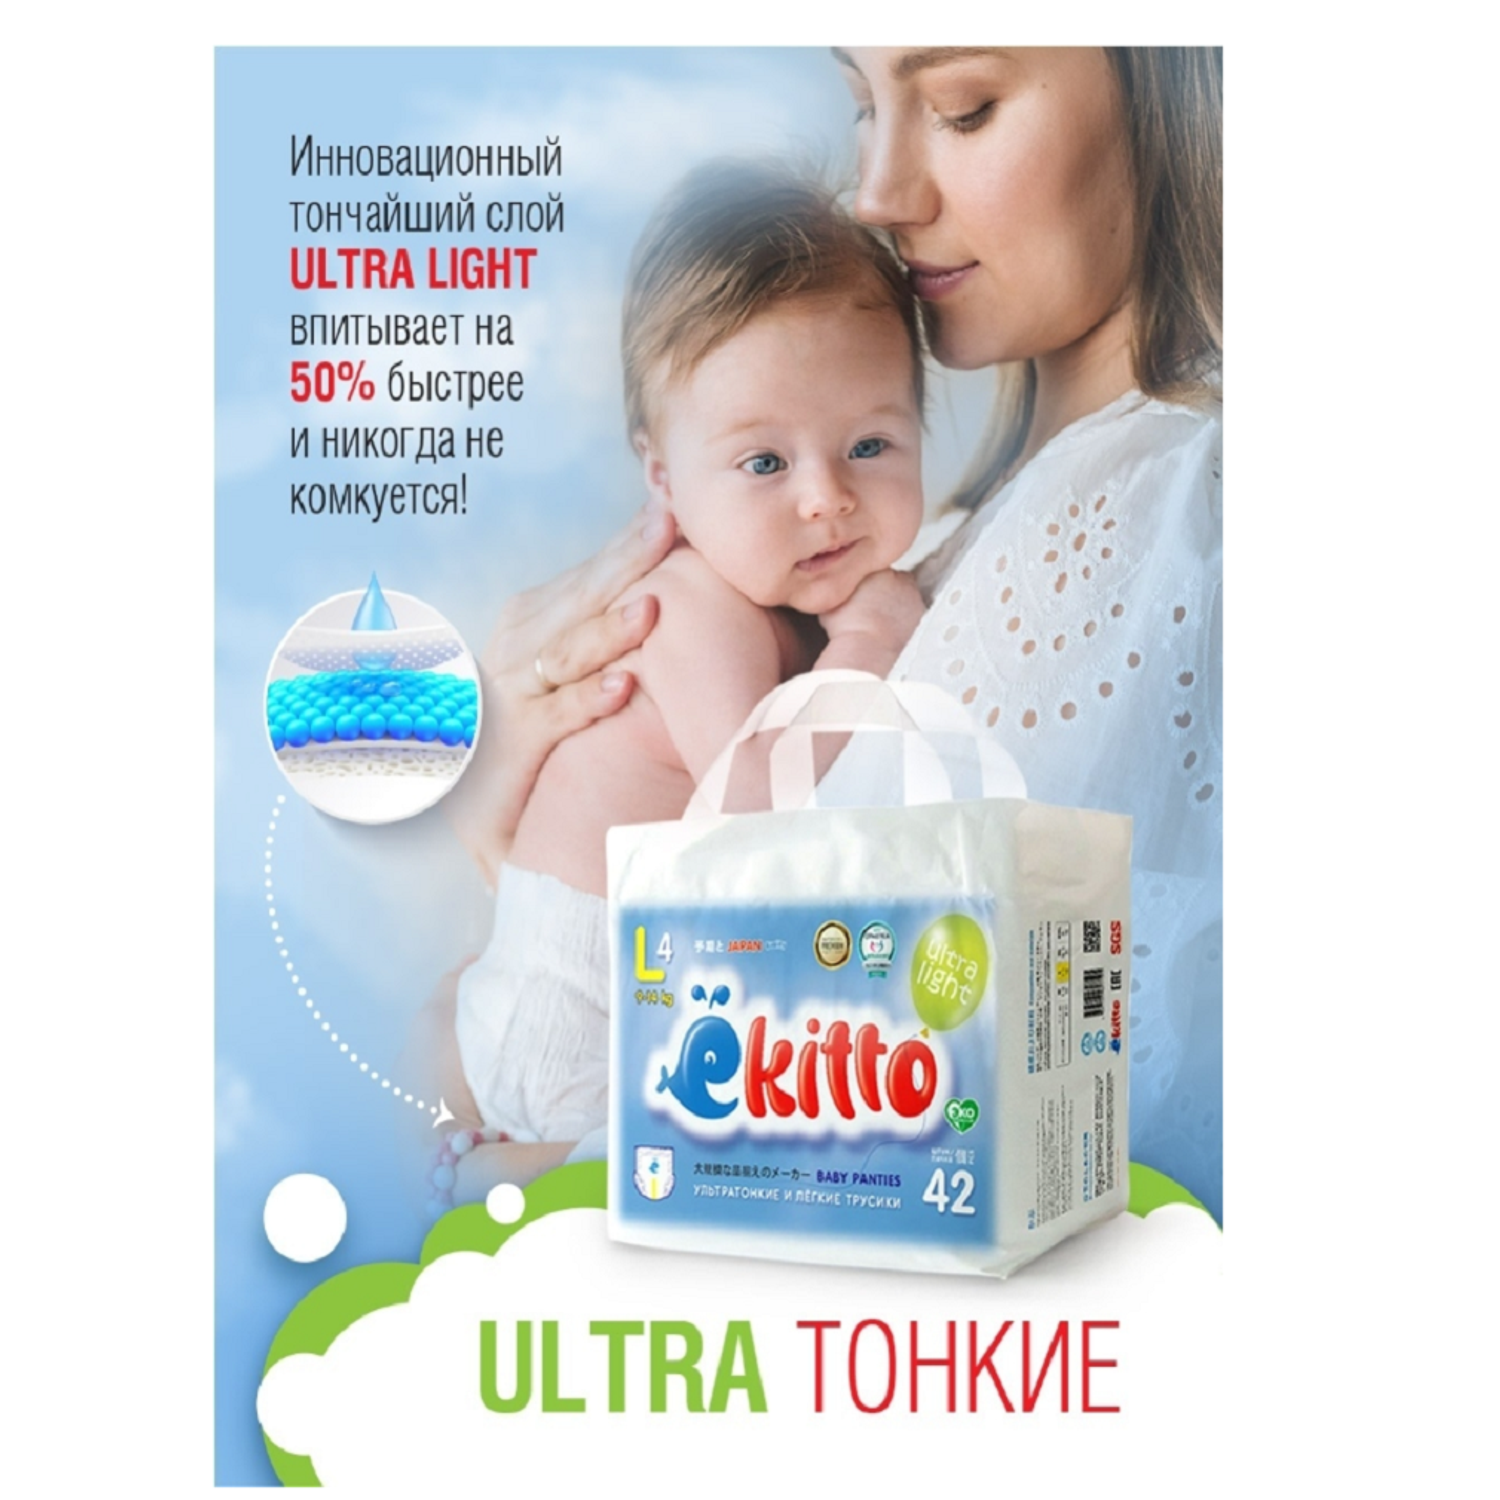 Подгузники-трусики Ekitto 5 размер XL ультратонкие для новорожденных детей от 12-17 кг 102 шт - фото 2